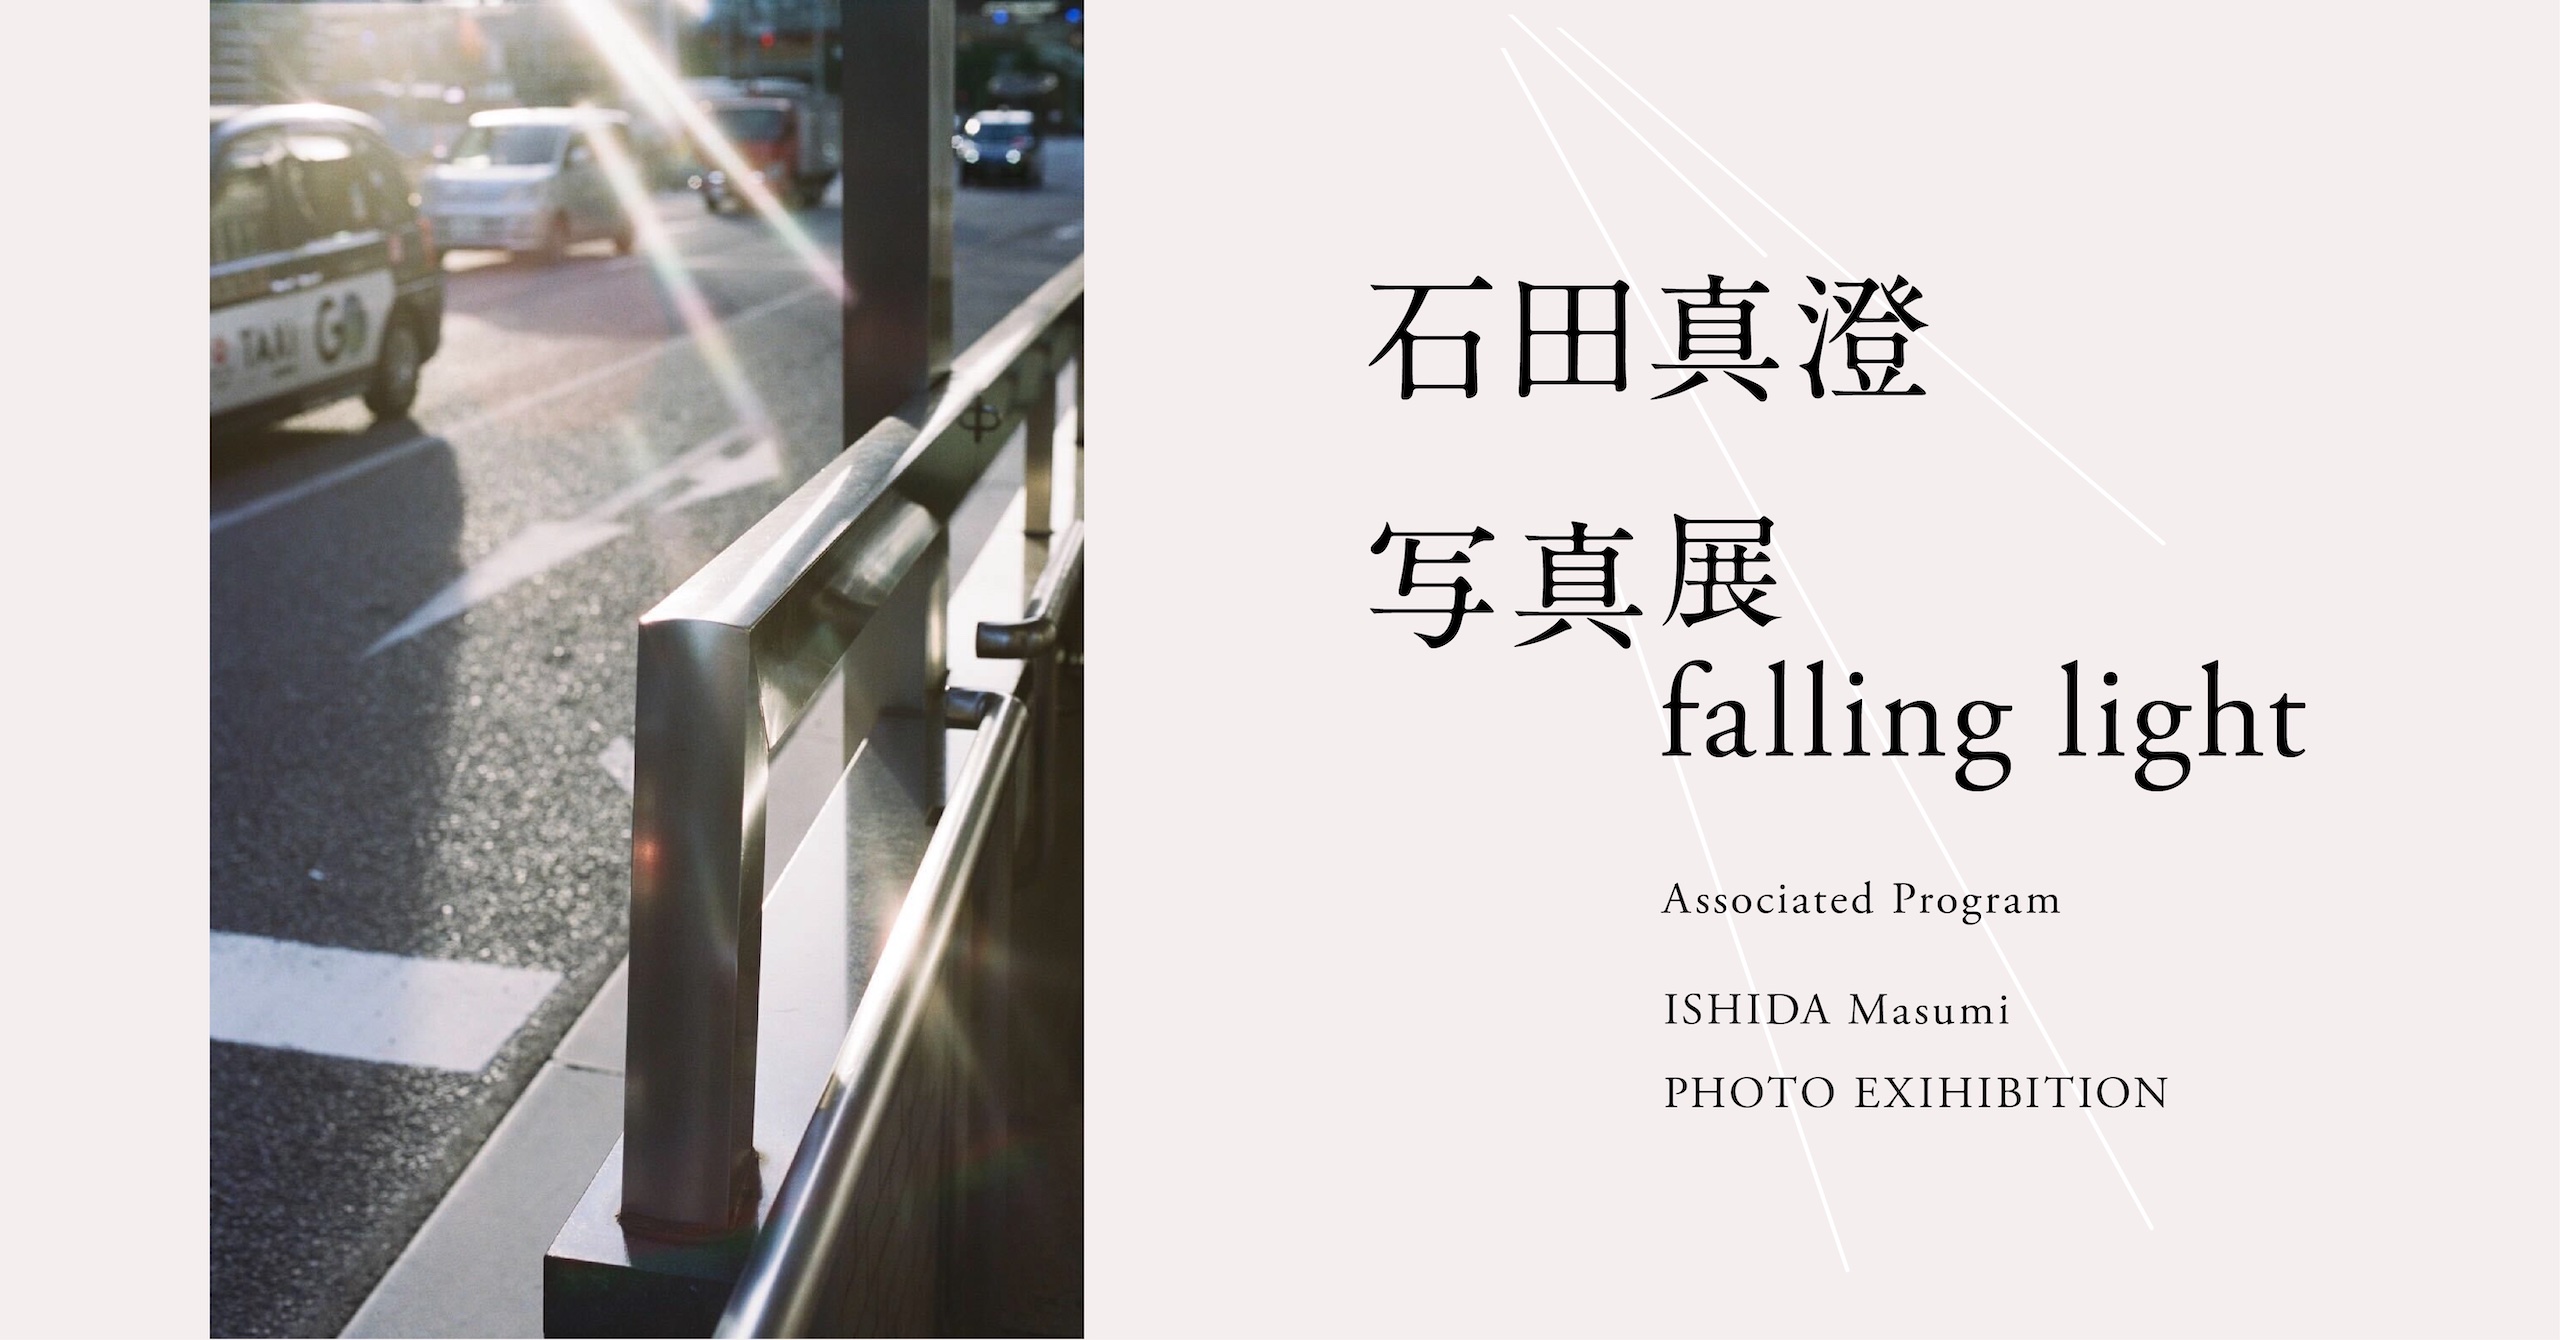 Masumi Ishida photo exhibition: “falling light”